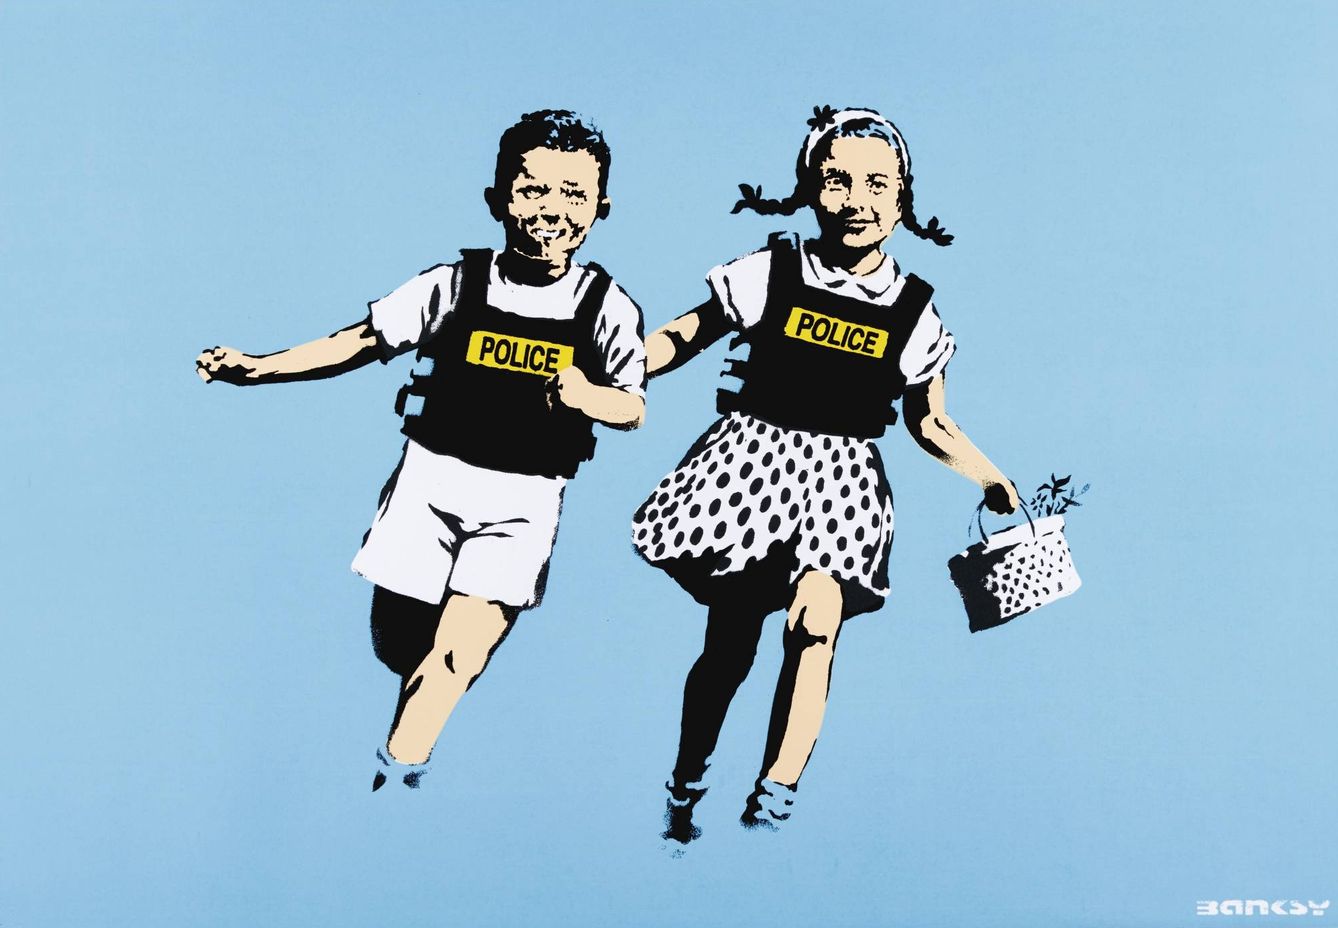 Serigrafía de Banksy a subasta en Sotheby's.